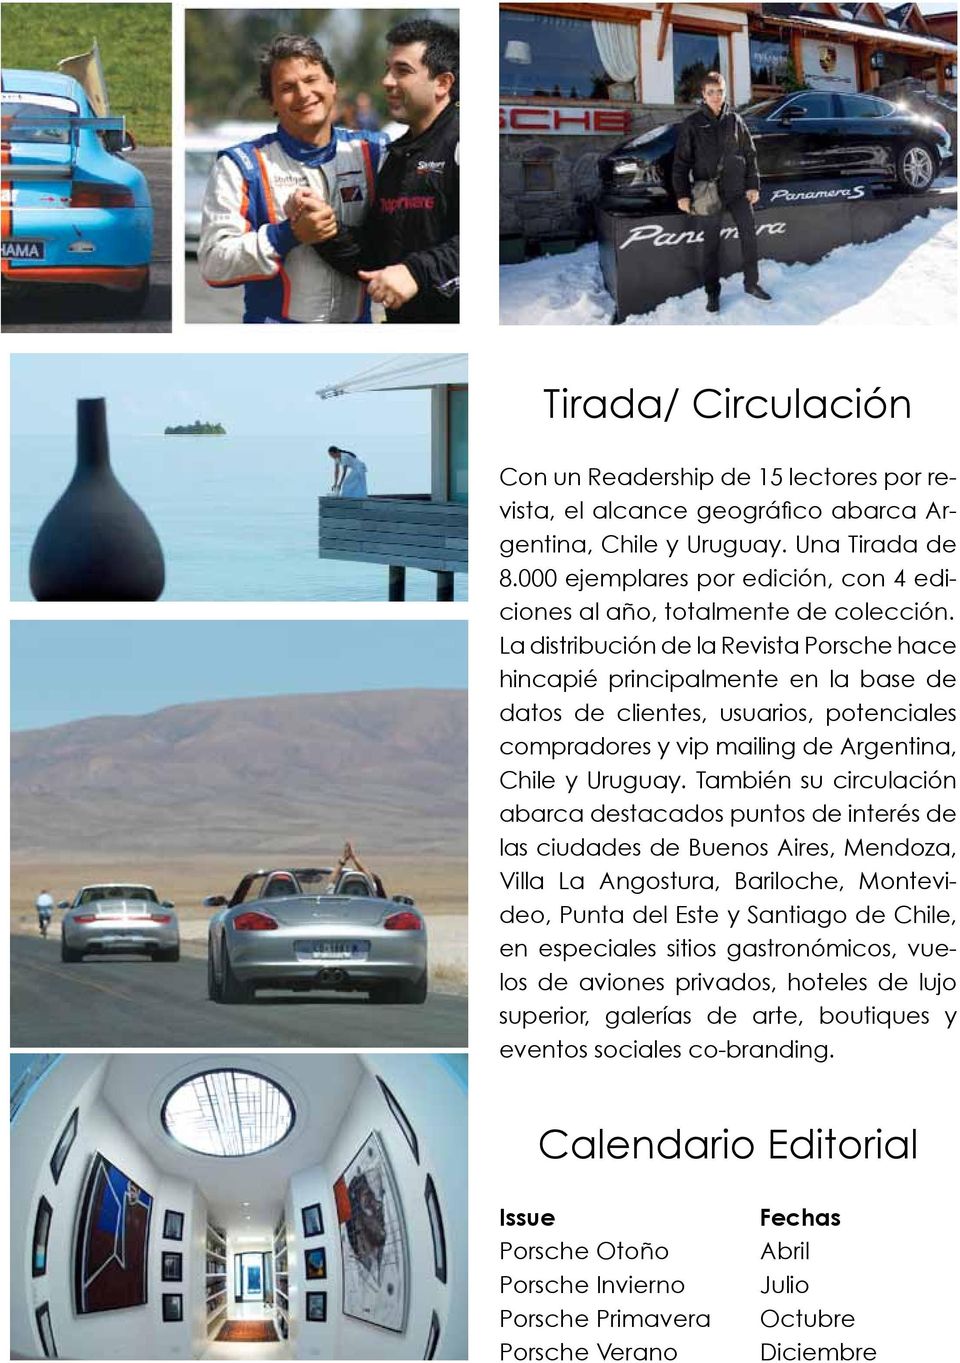 La distribución de la Revista Porsche hace hincapié principalmente en la base de datos de clientes, usuarios, potenciales compradores y vip mailing de Argentina, Chile y Uruguay.